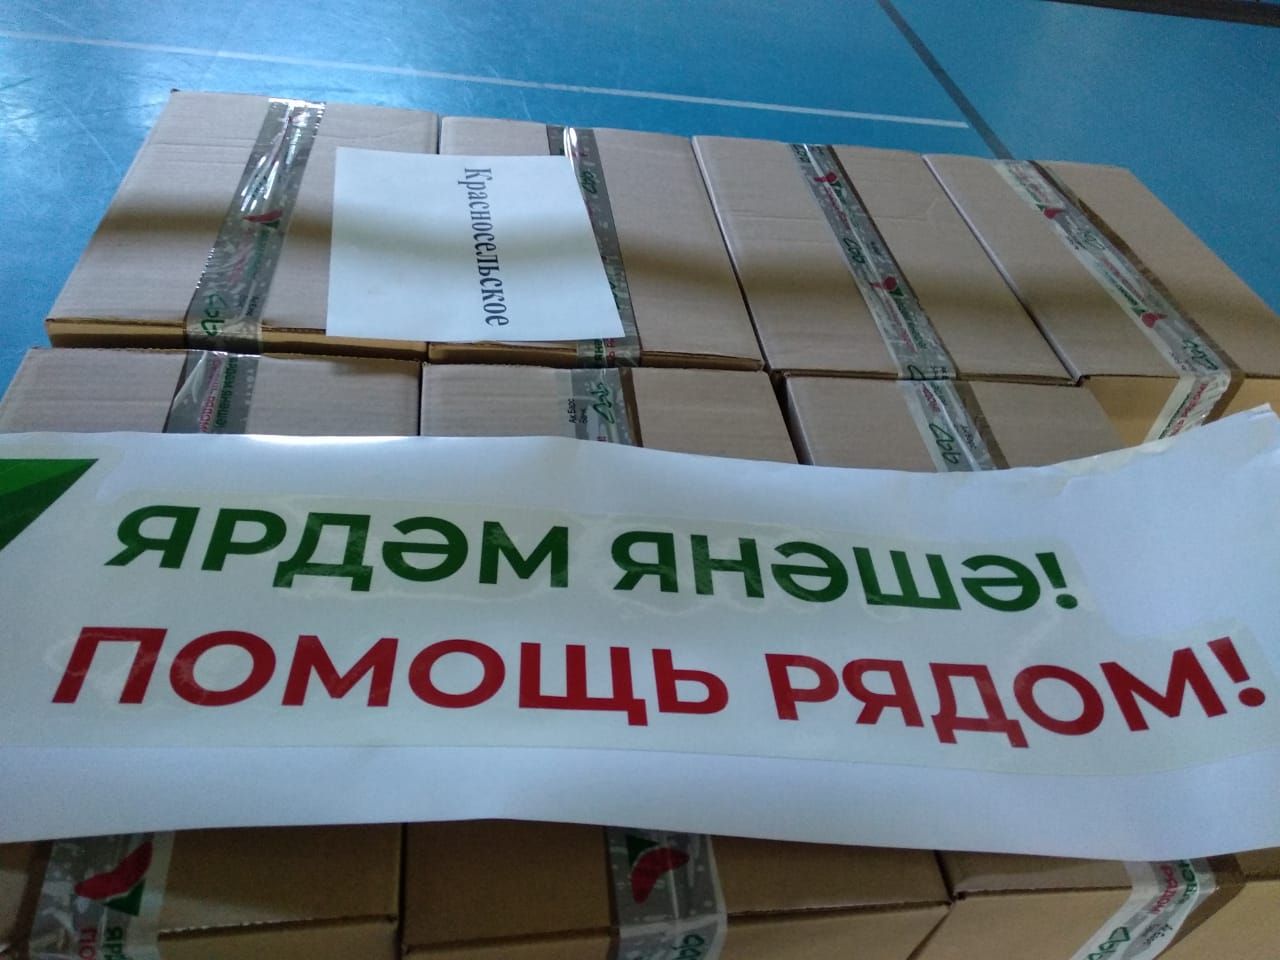 В Высокогорский район привезли наборы продуктов по поручению Президента Татарстана